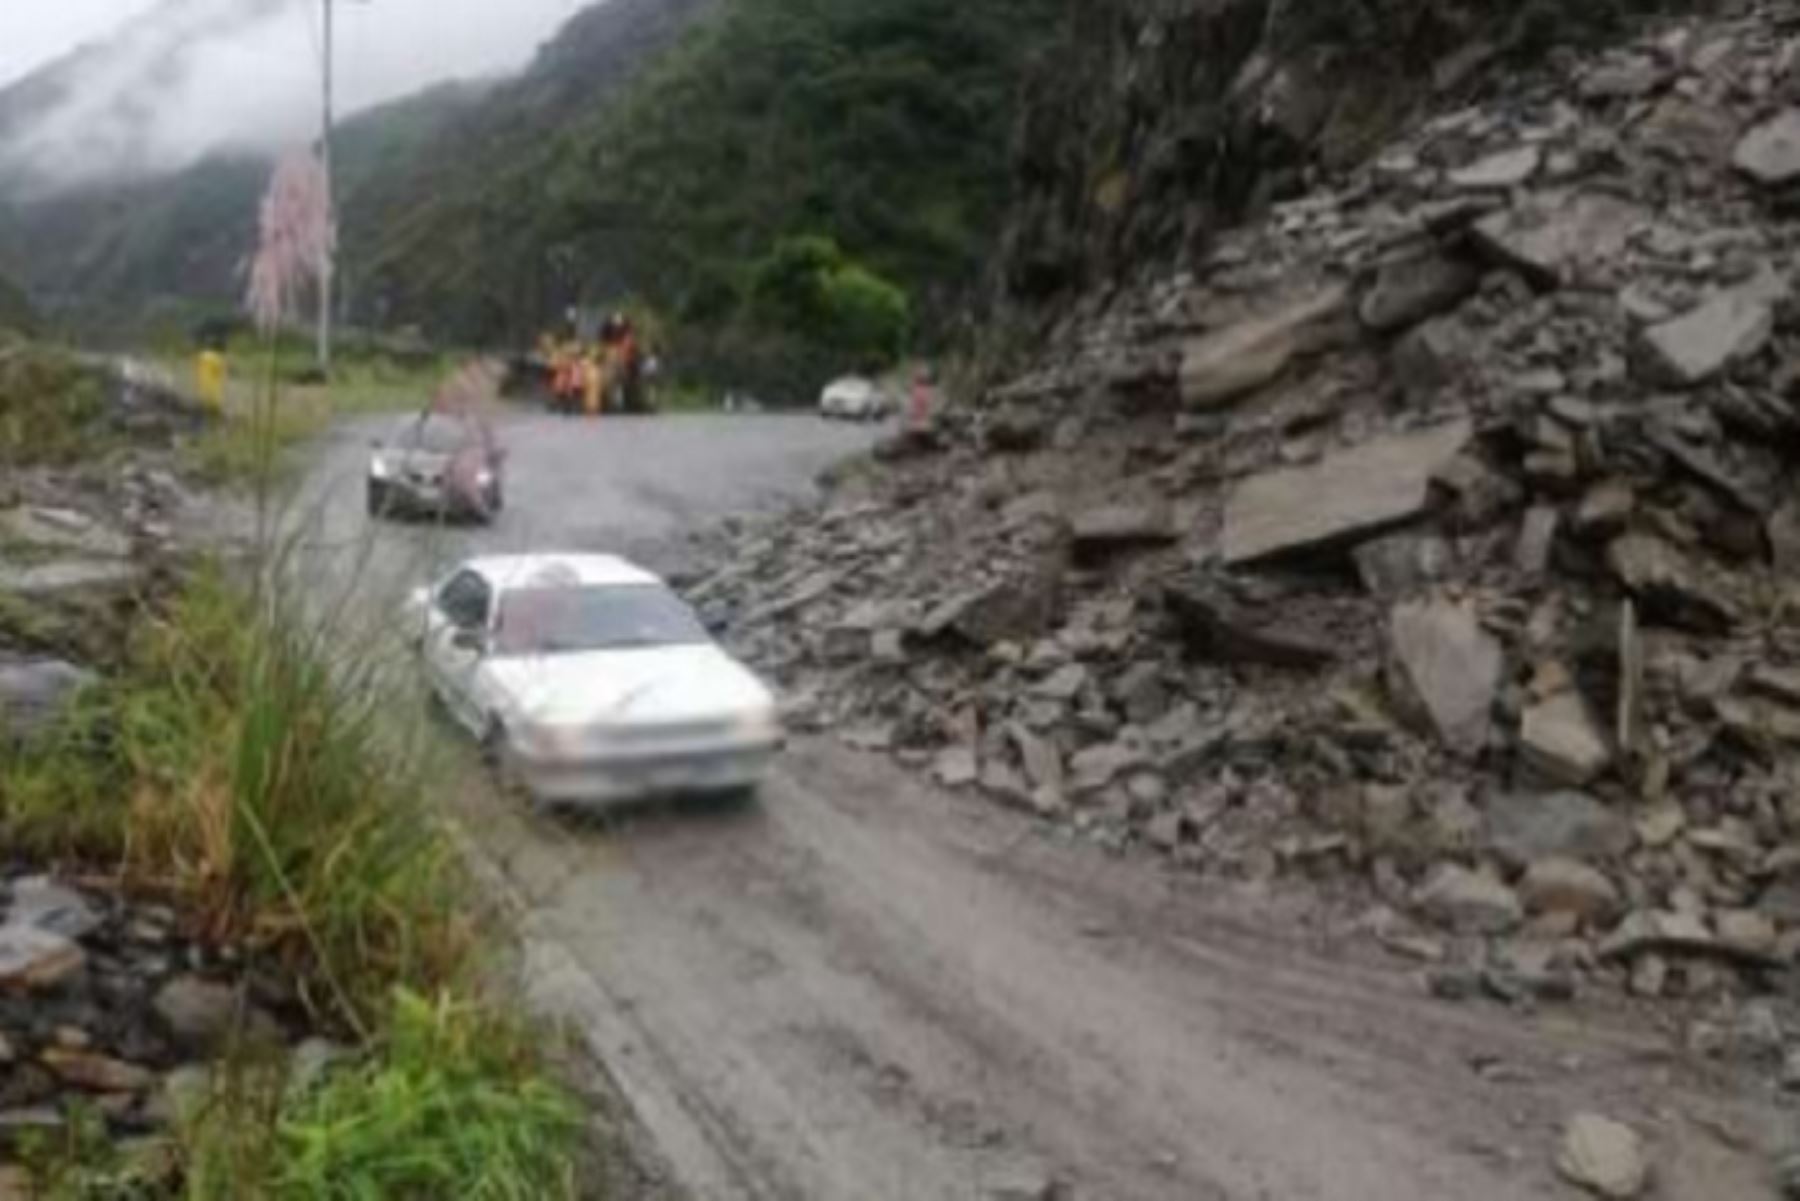 El tránsito es restringido en el kilómetro 70.9 de la carretera Tarma -Chanchamayo (sector San Pedro), del distrito de Palca, provincia de Tarma, región Junín, debido al deslizamiento de rocas y piedra ocurrido esta mañana por las intensas lluvias en la zona, informó la Policía Nacional del Perú.